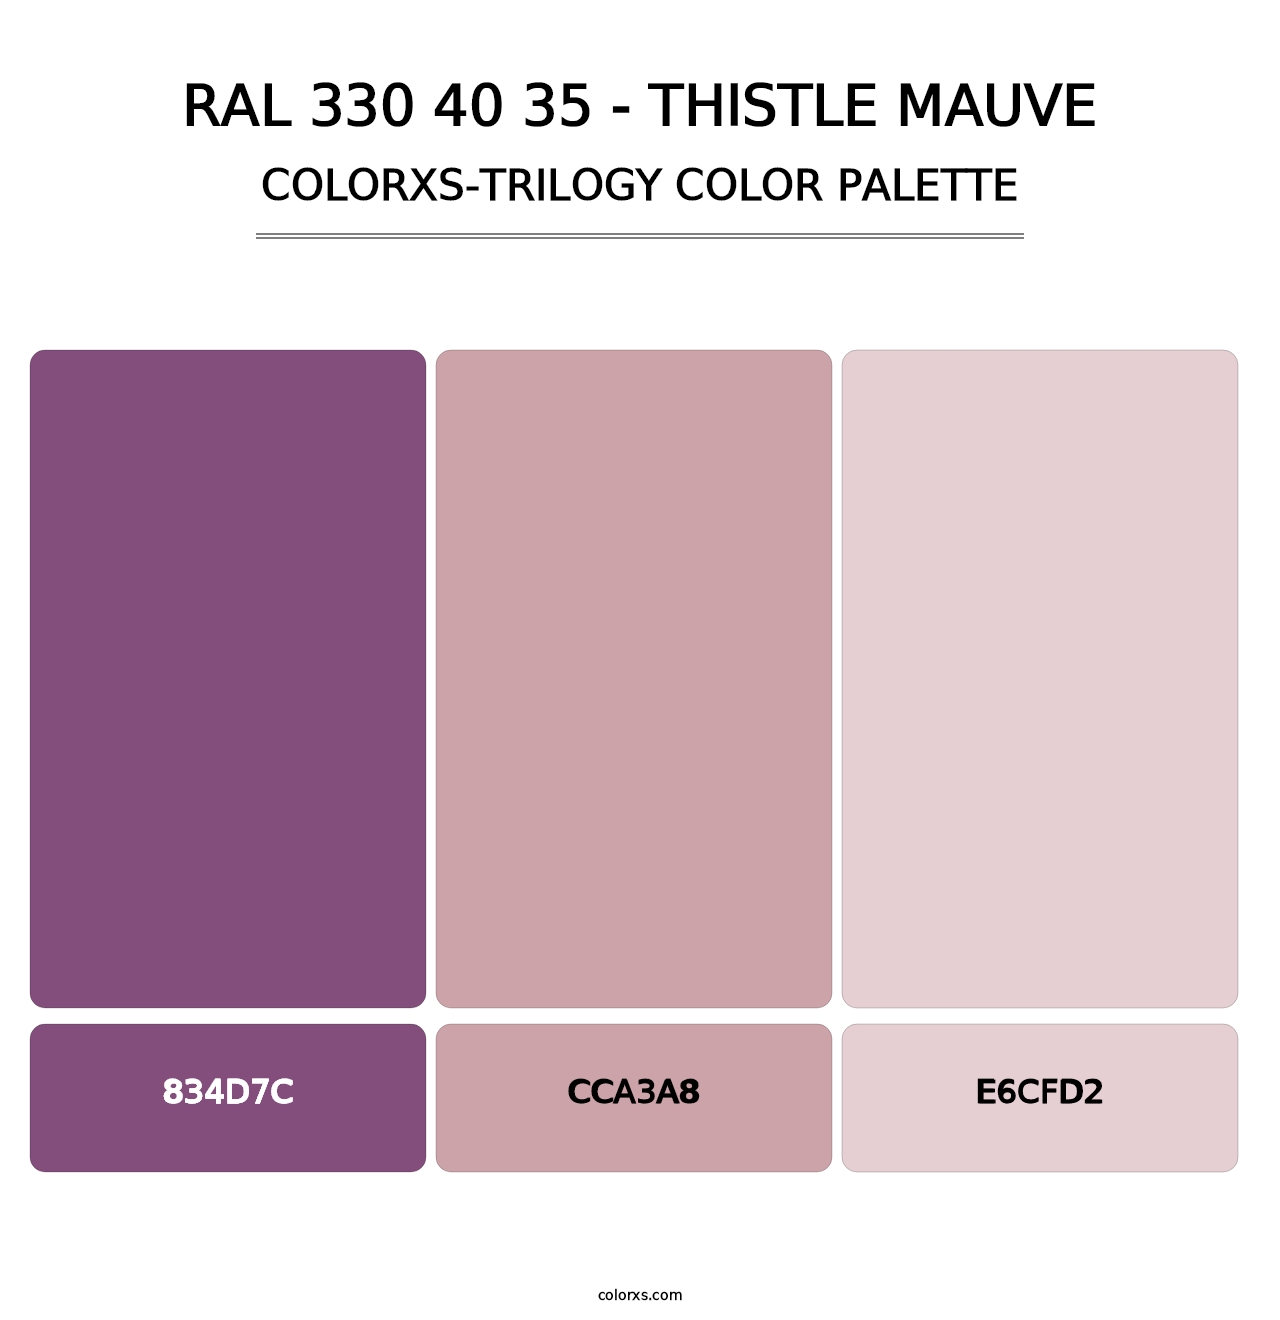 RAL 330 40 35 - Thistle Mauve - Colorxs Trilogy Palette